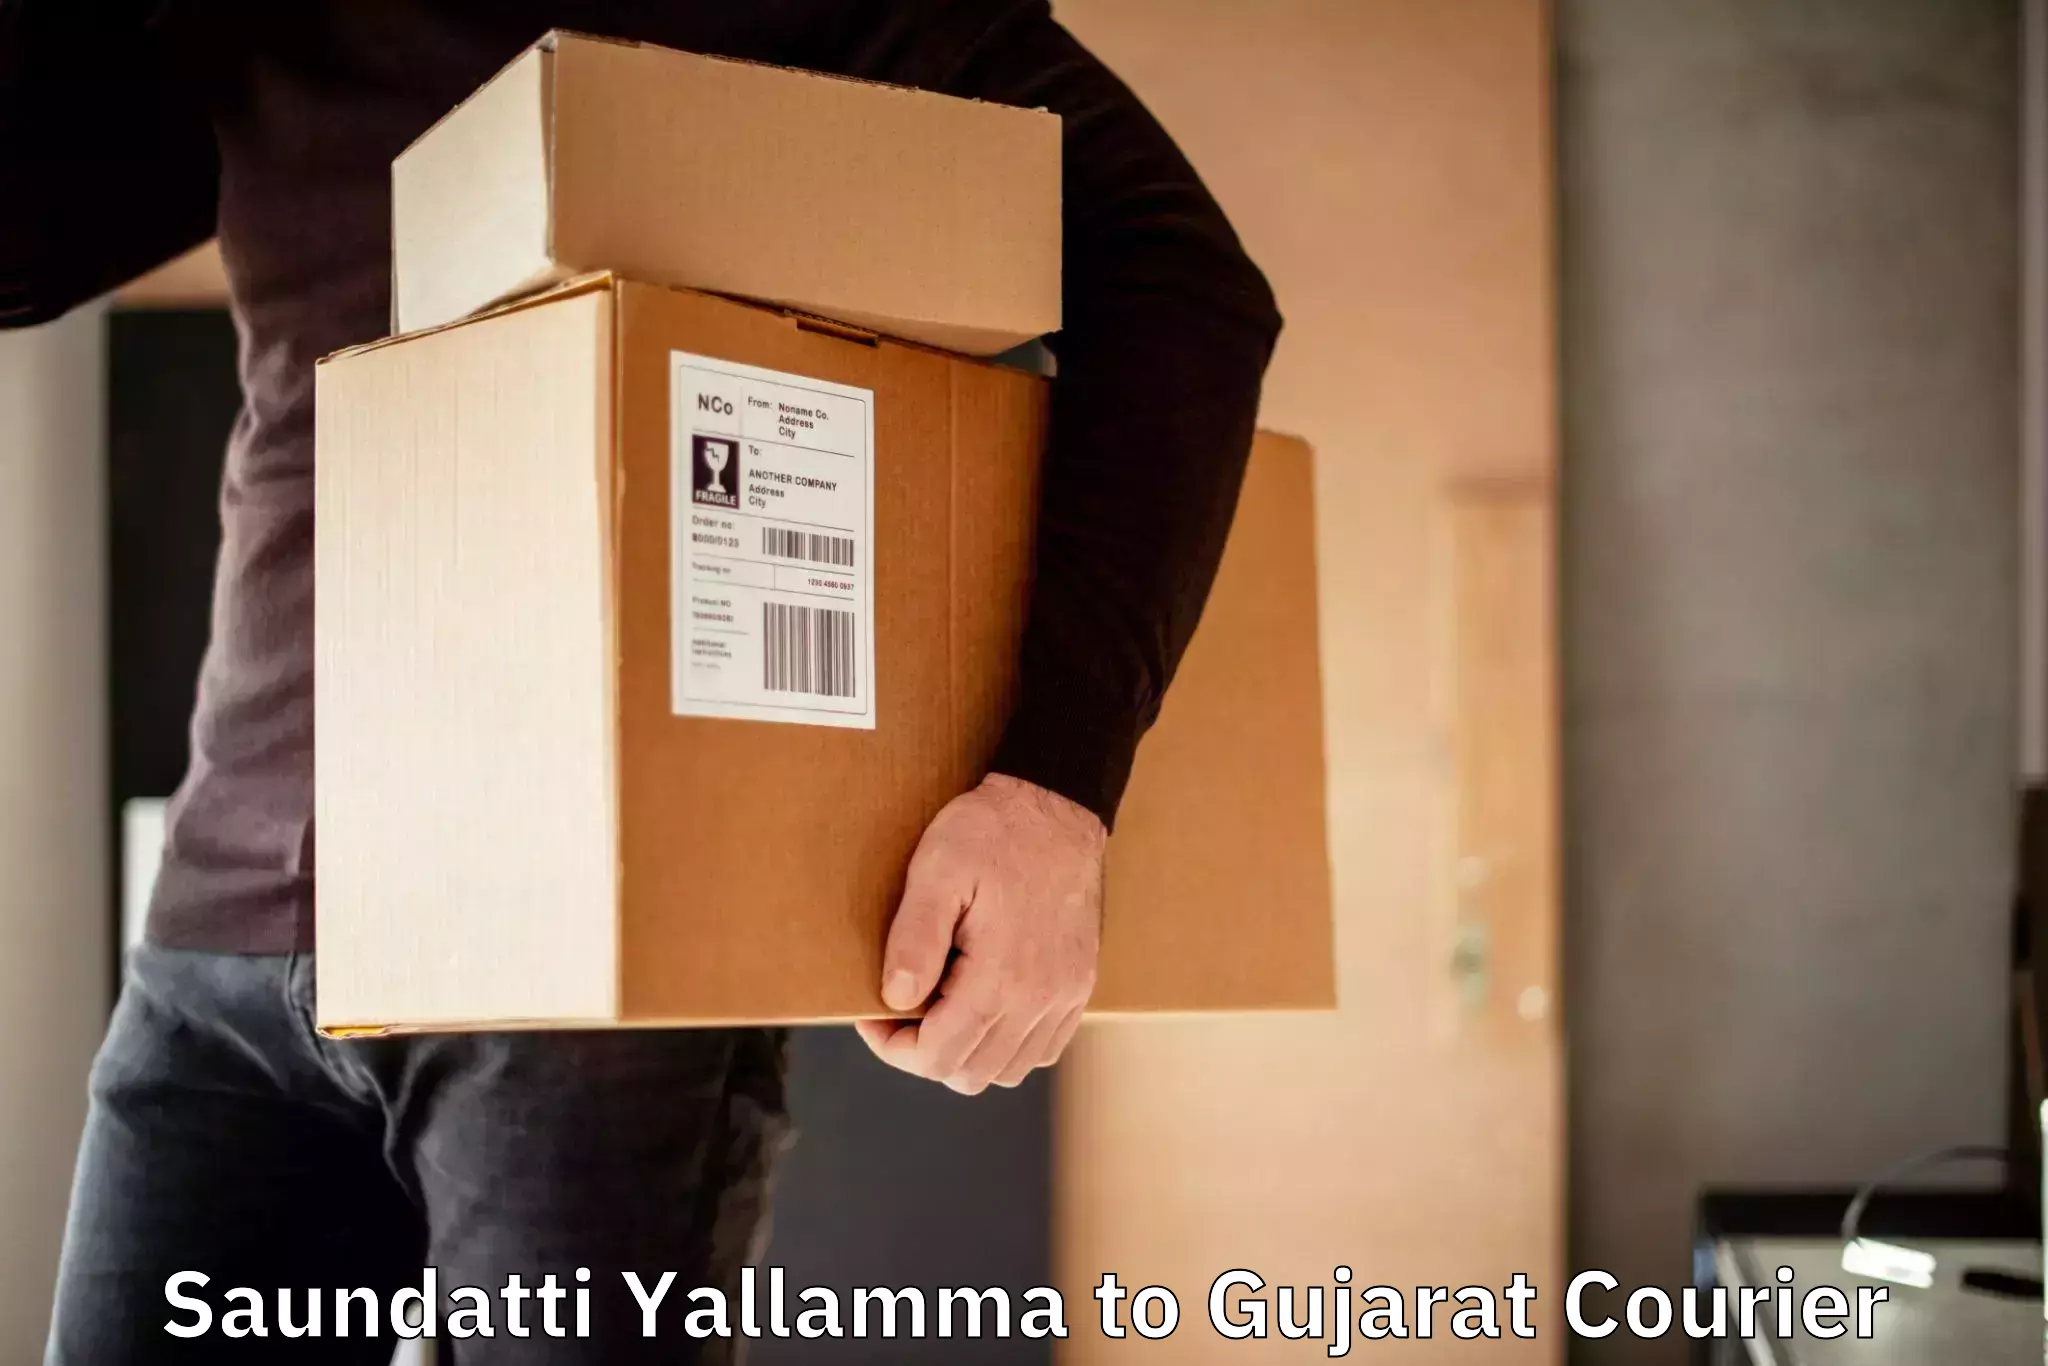 Specialized shipment handling Saundatti Yallamma to Rumkitalav